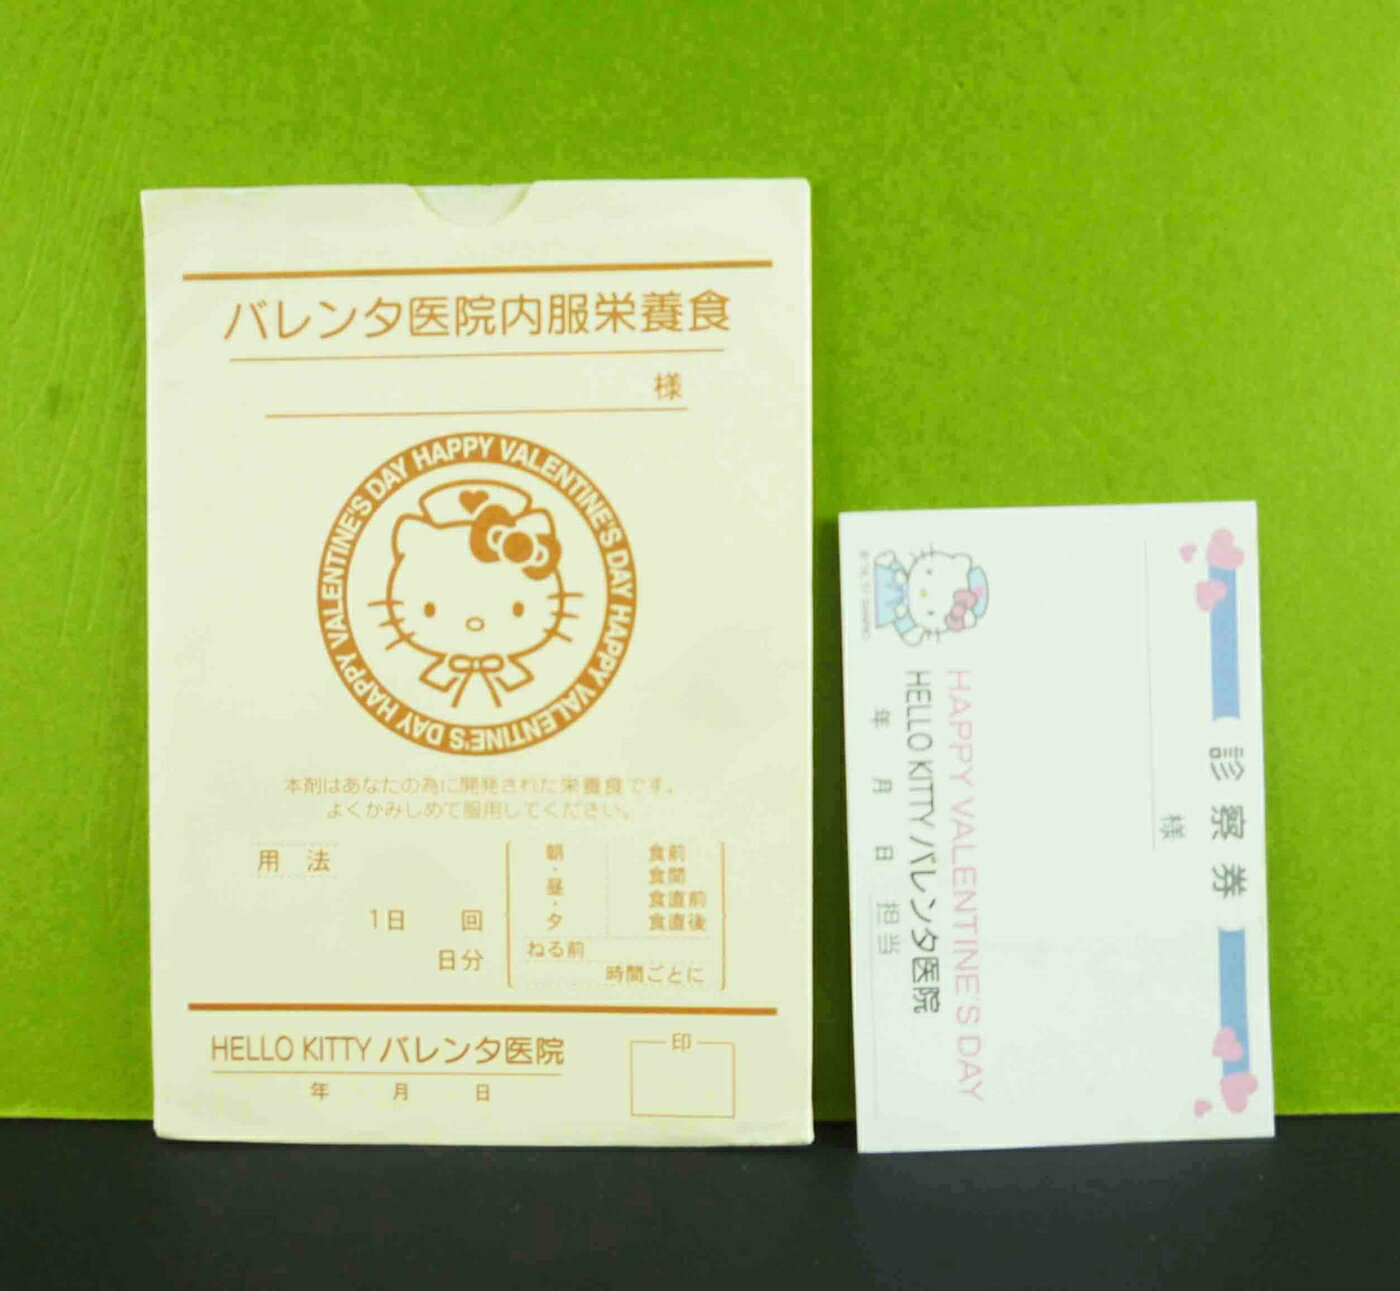 【震撼精品百貨】Hello Kitty 凱蒂貓 卡片-黃護士 震撼日式精品百貨